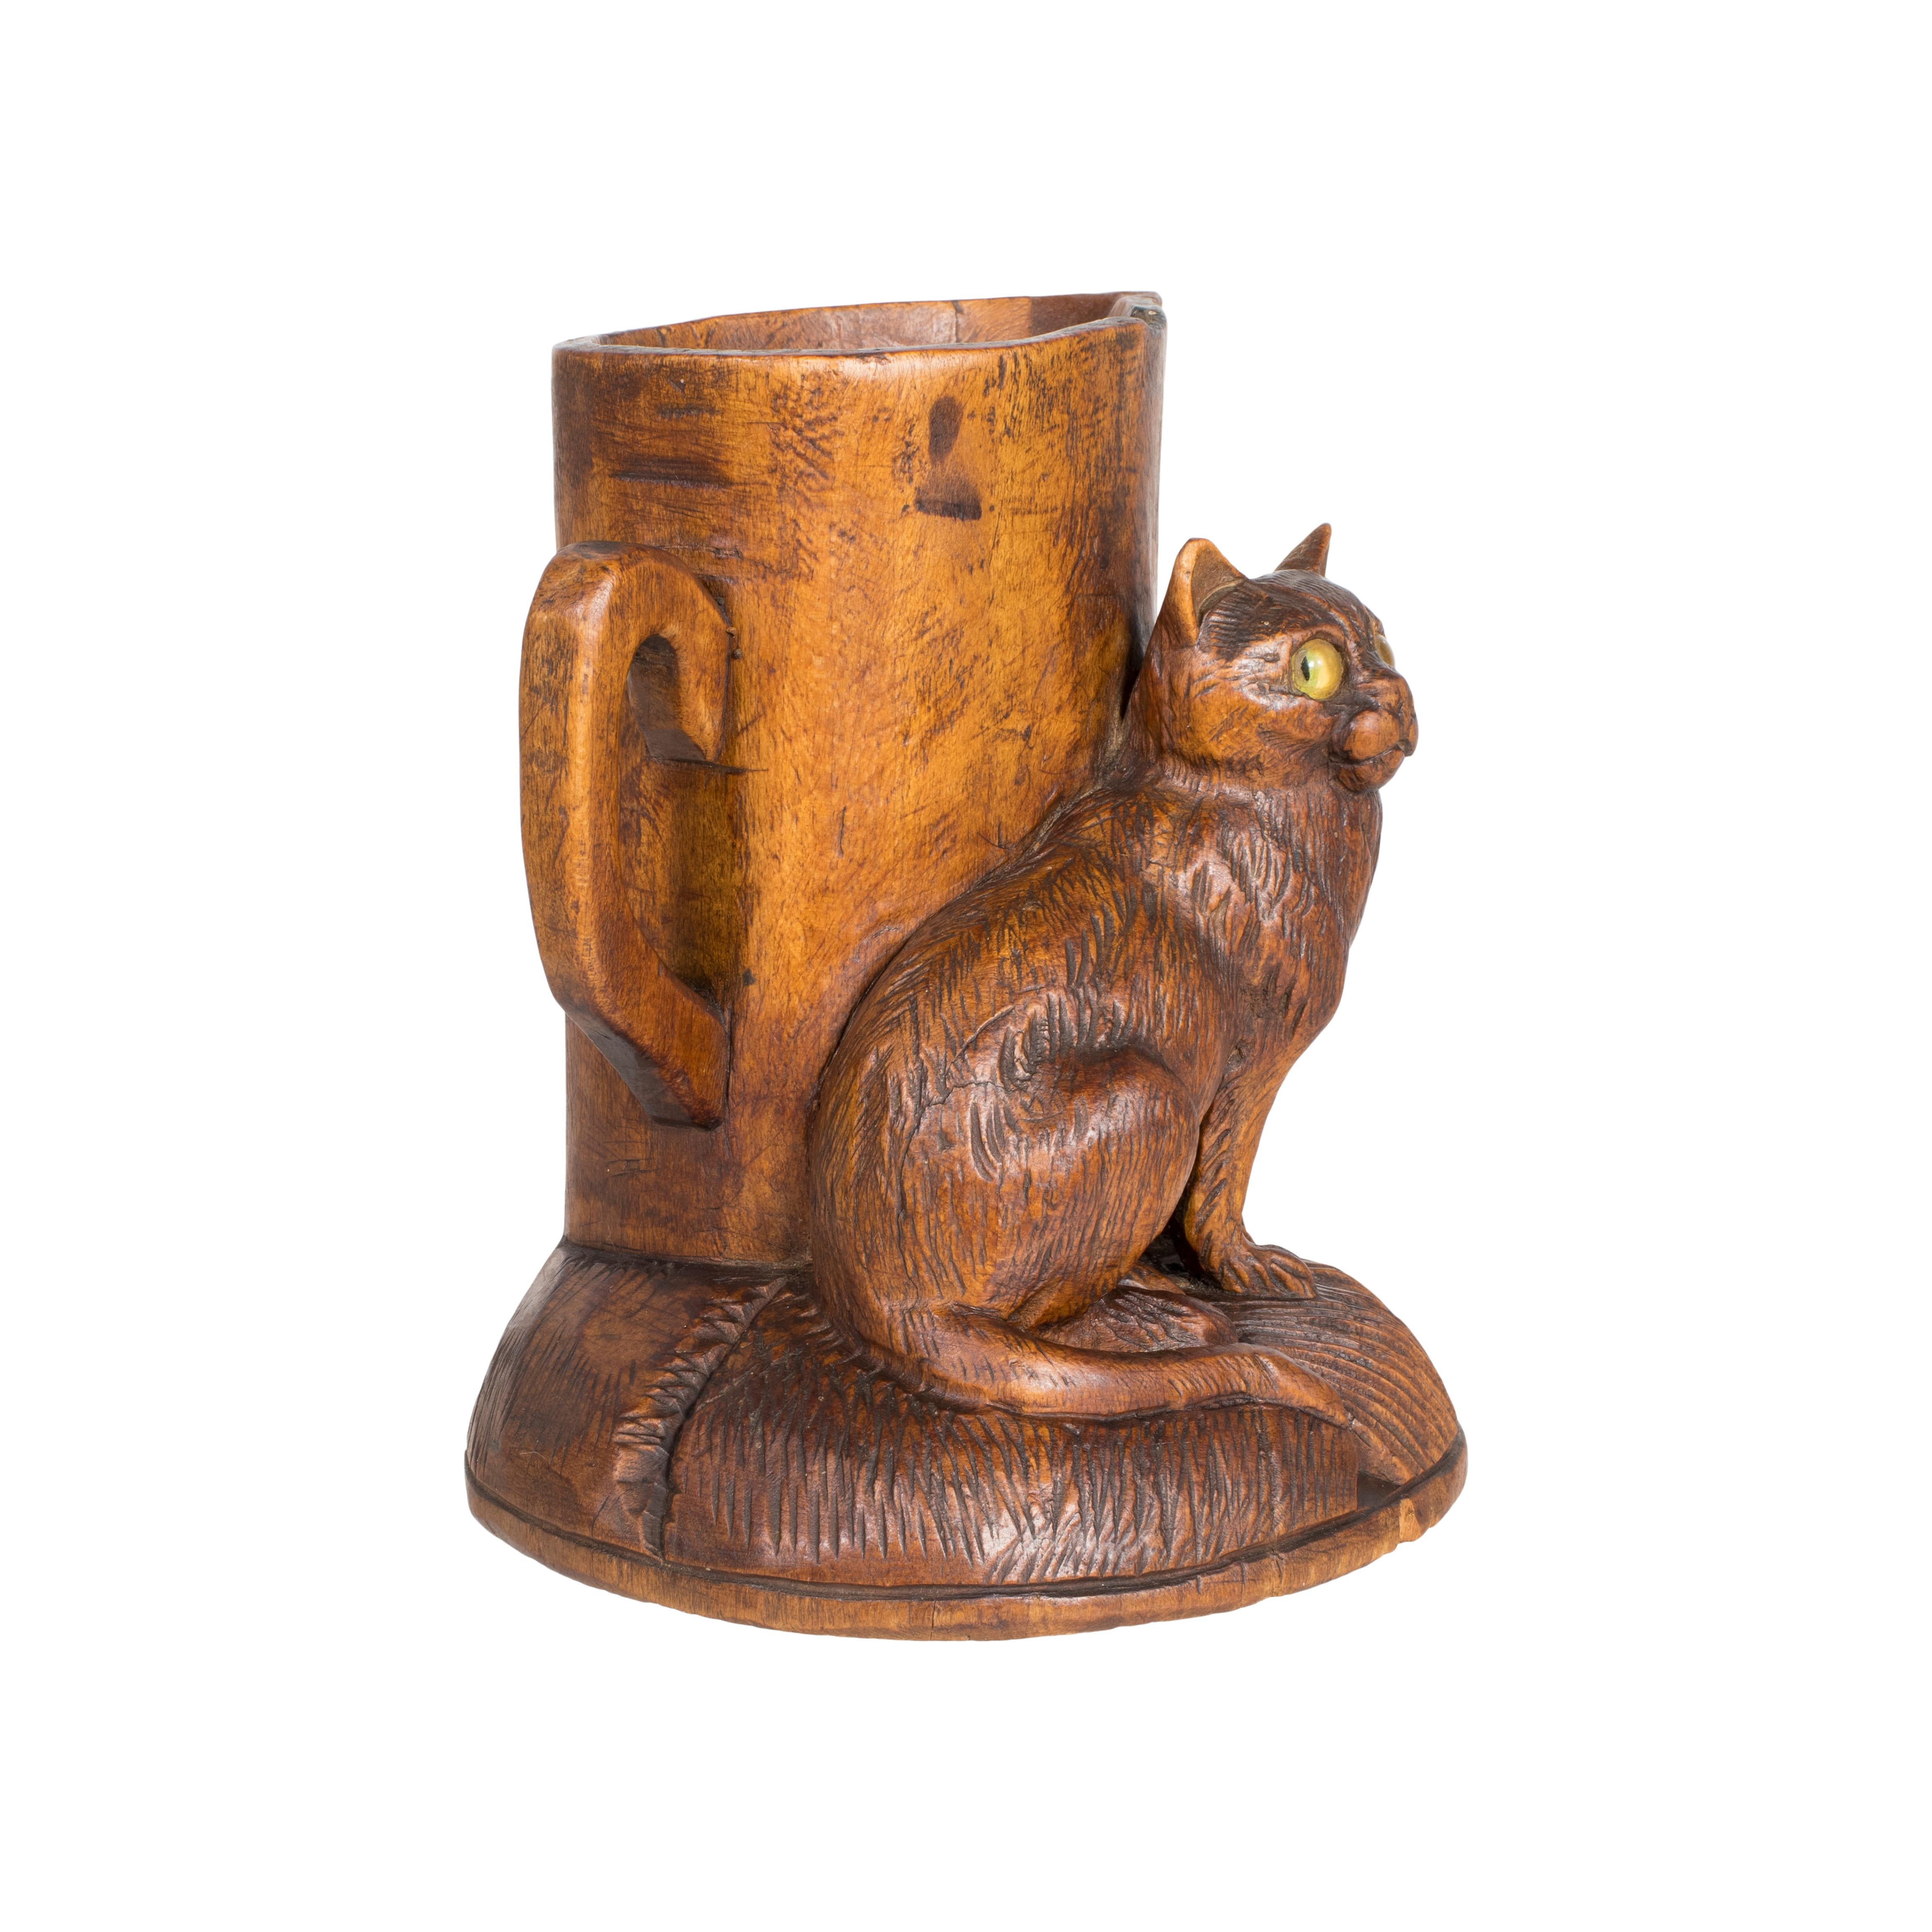 Porte-allumettes suisse sculpté avec un chat aux yeux de verre assis à côté d'un pichet. C'est dans la ville de Townes qu'est née, dans les années 1800, l'industrie suisse de la sculpture sur bois. À la fin des années 1800, il était devenu la force